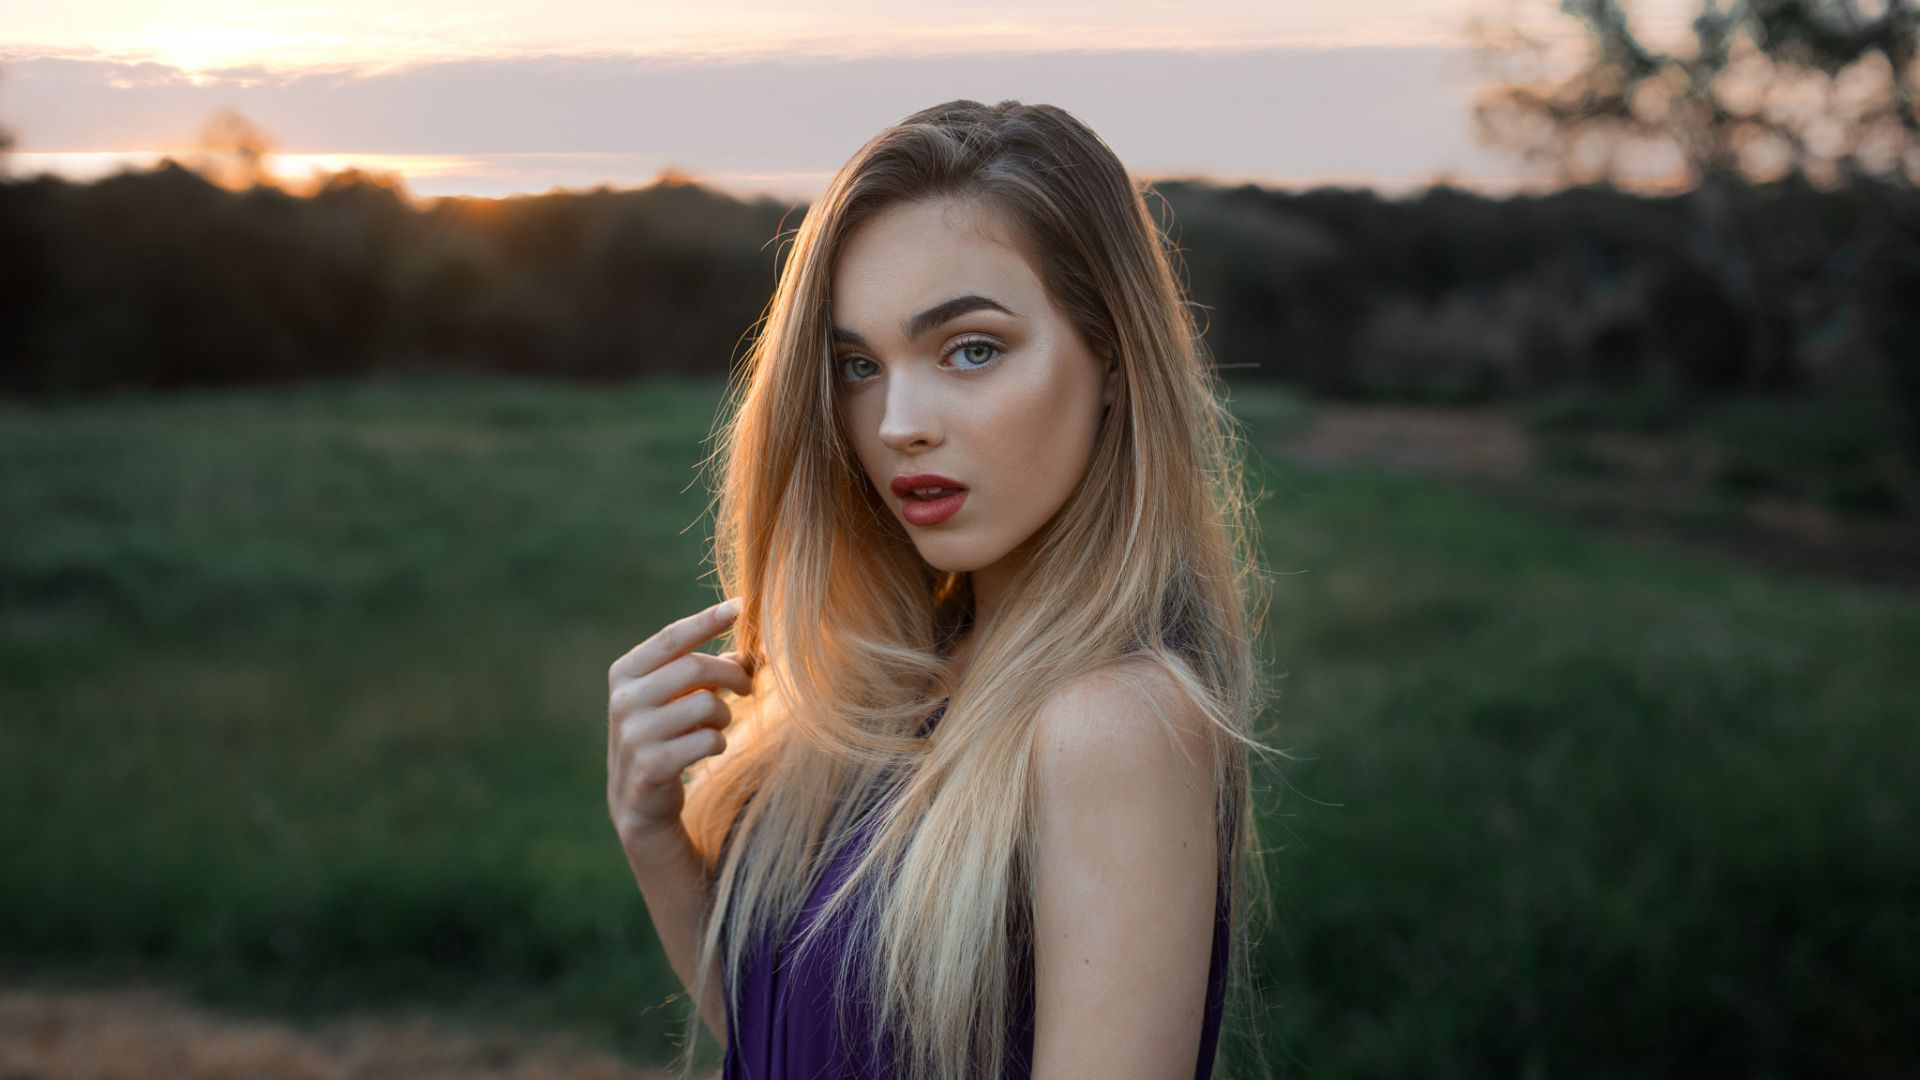 Wallpaper Blonde, girl model, sunset, outdoor